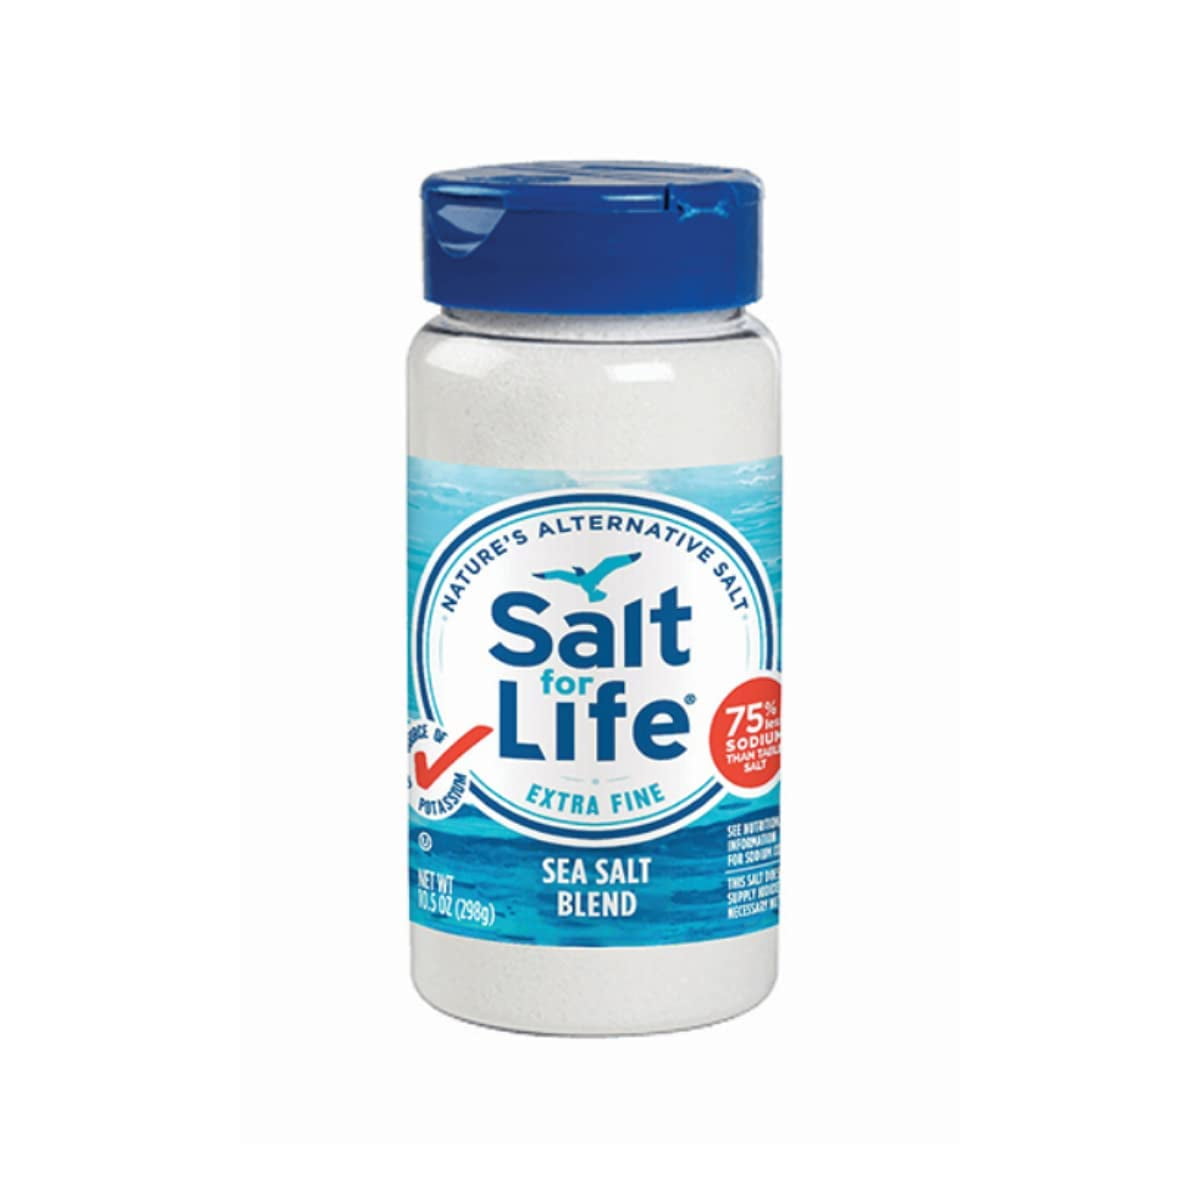 Salt For Life Salt Substitute - 10.5 oz. - Tasty Low Sodium Salt ...